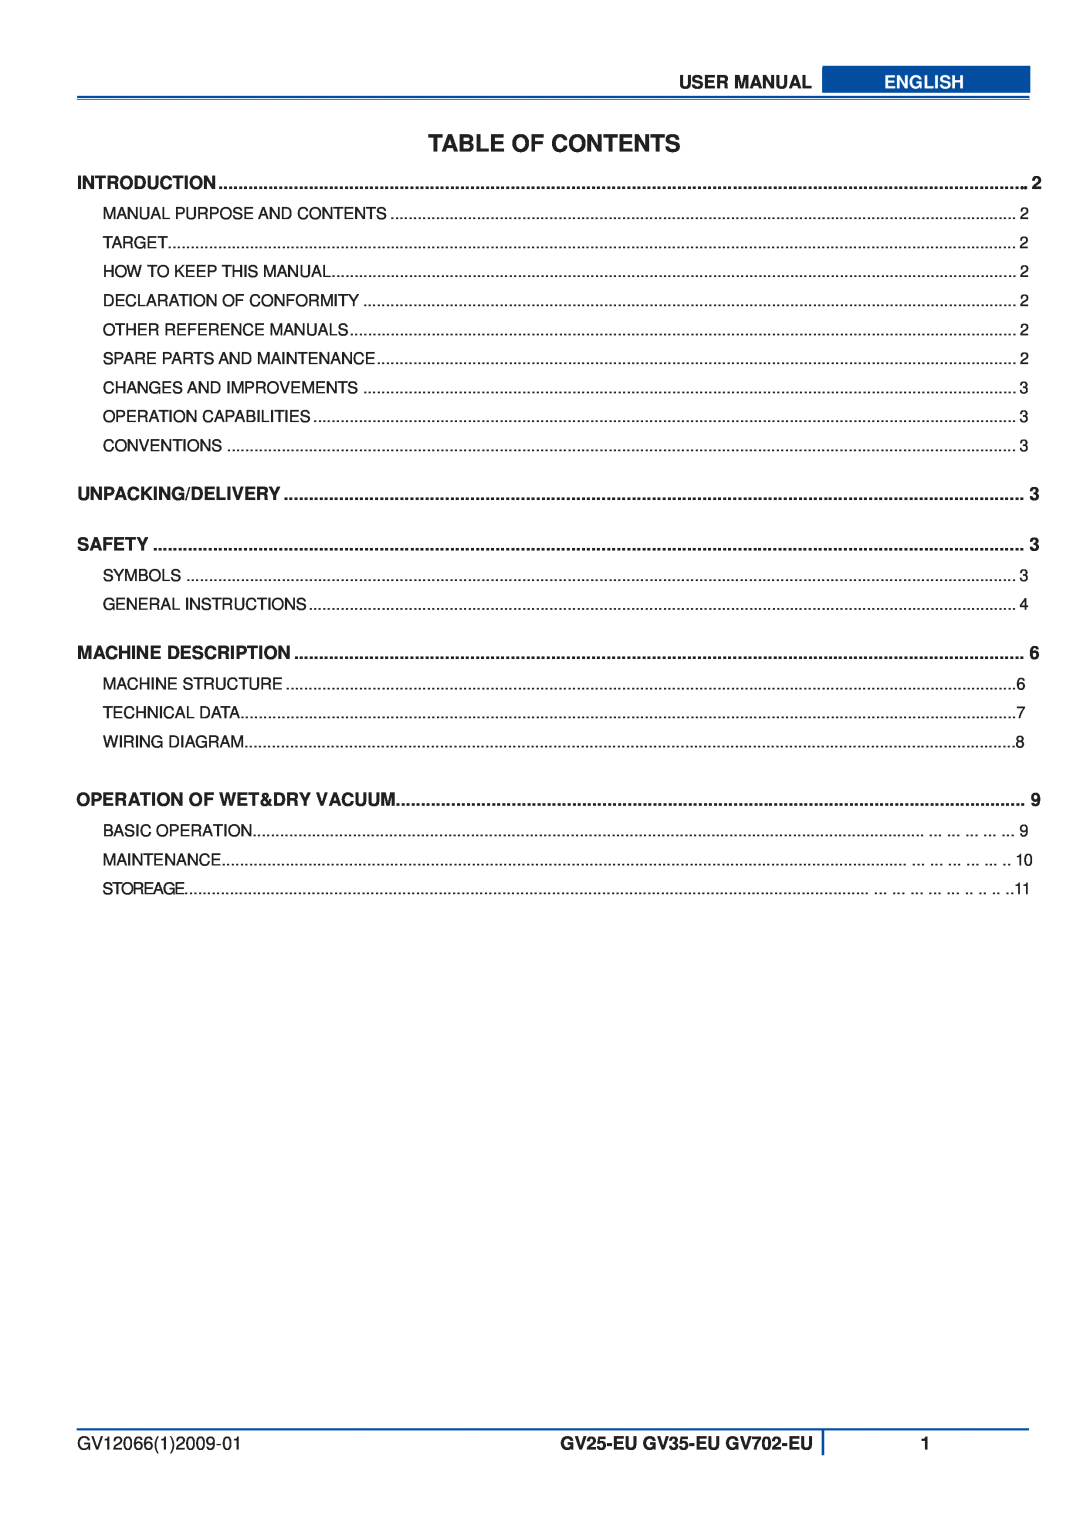 Viper user manual Table Of Contents, English, GV1206612009-01, GV25-EU GV35-EU GV702-EU 